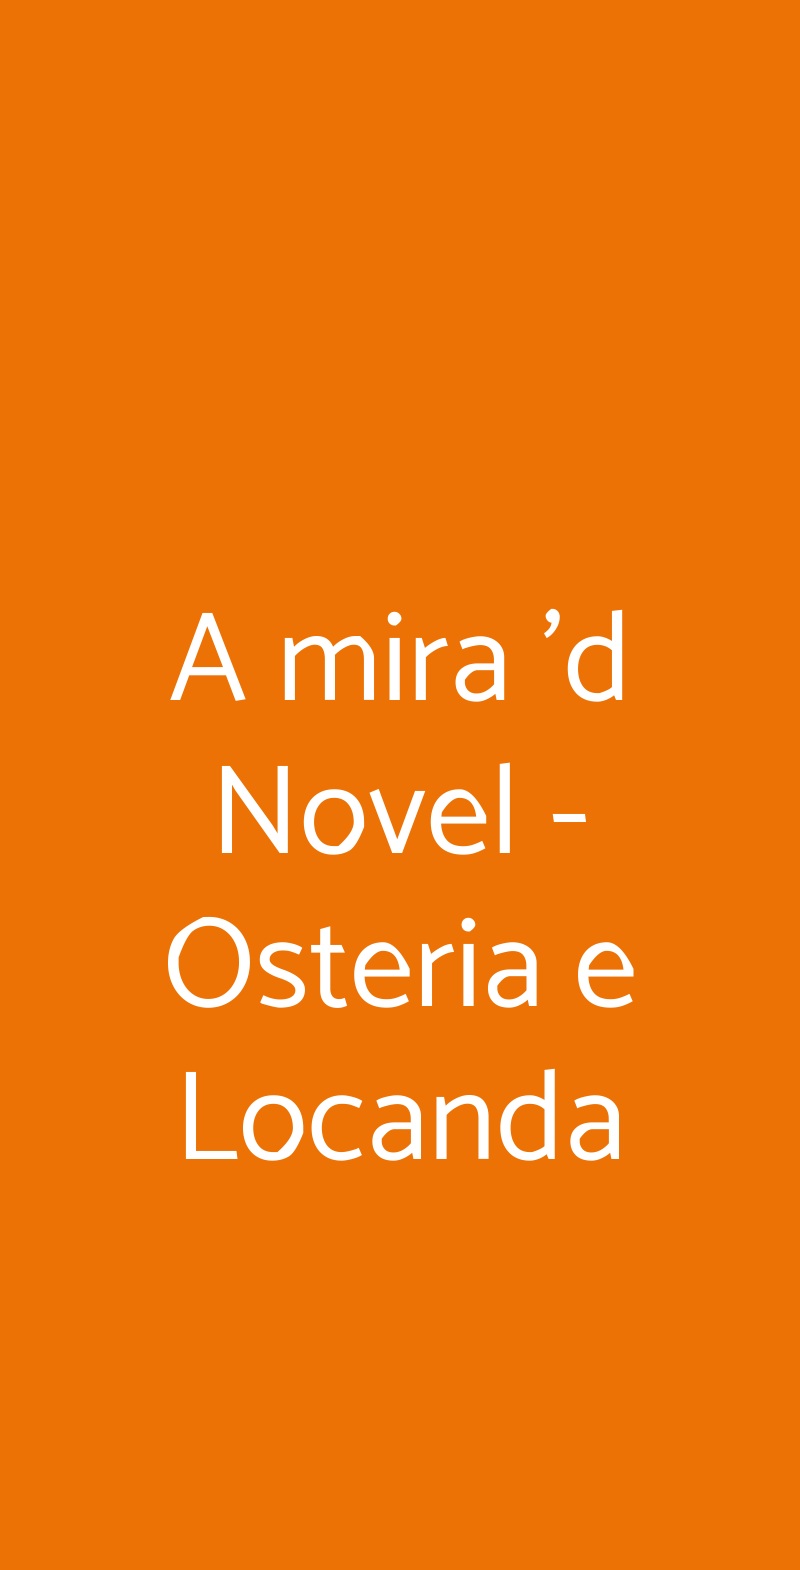 A mira 'd Novel - Osteria e Locanda Novello menù 1 pagina